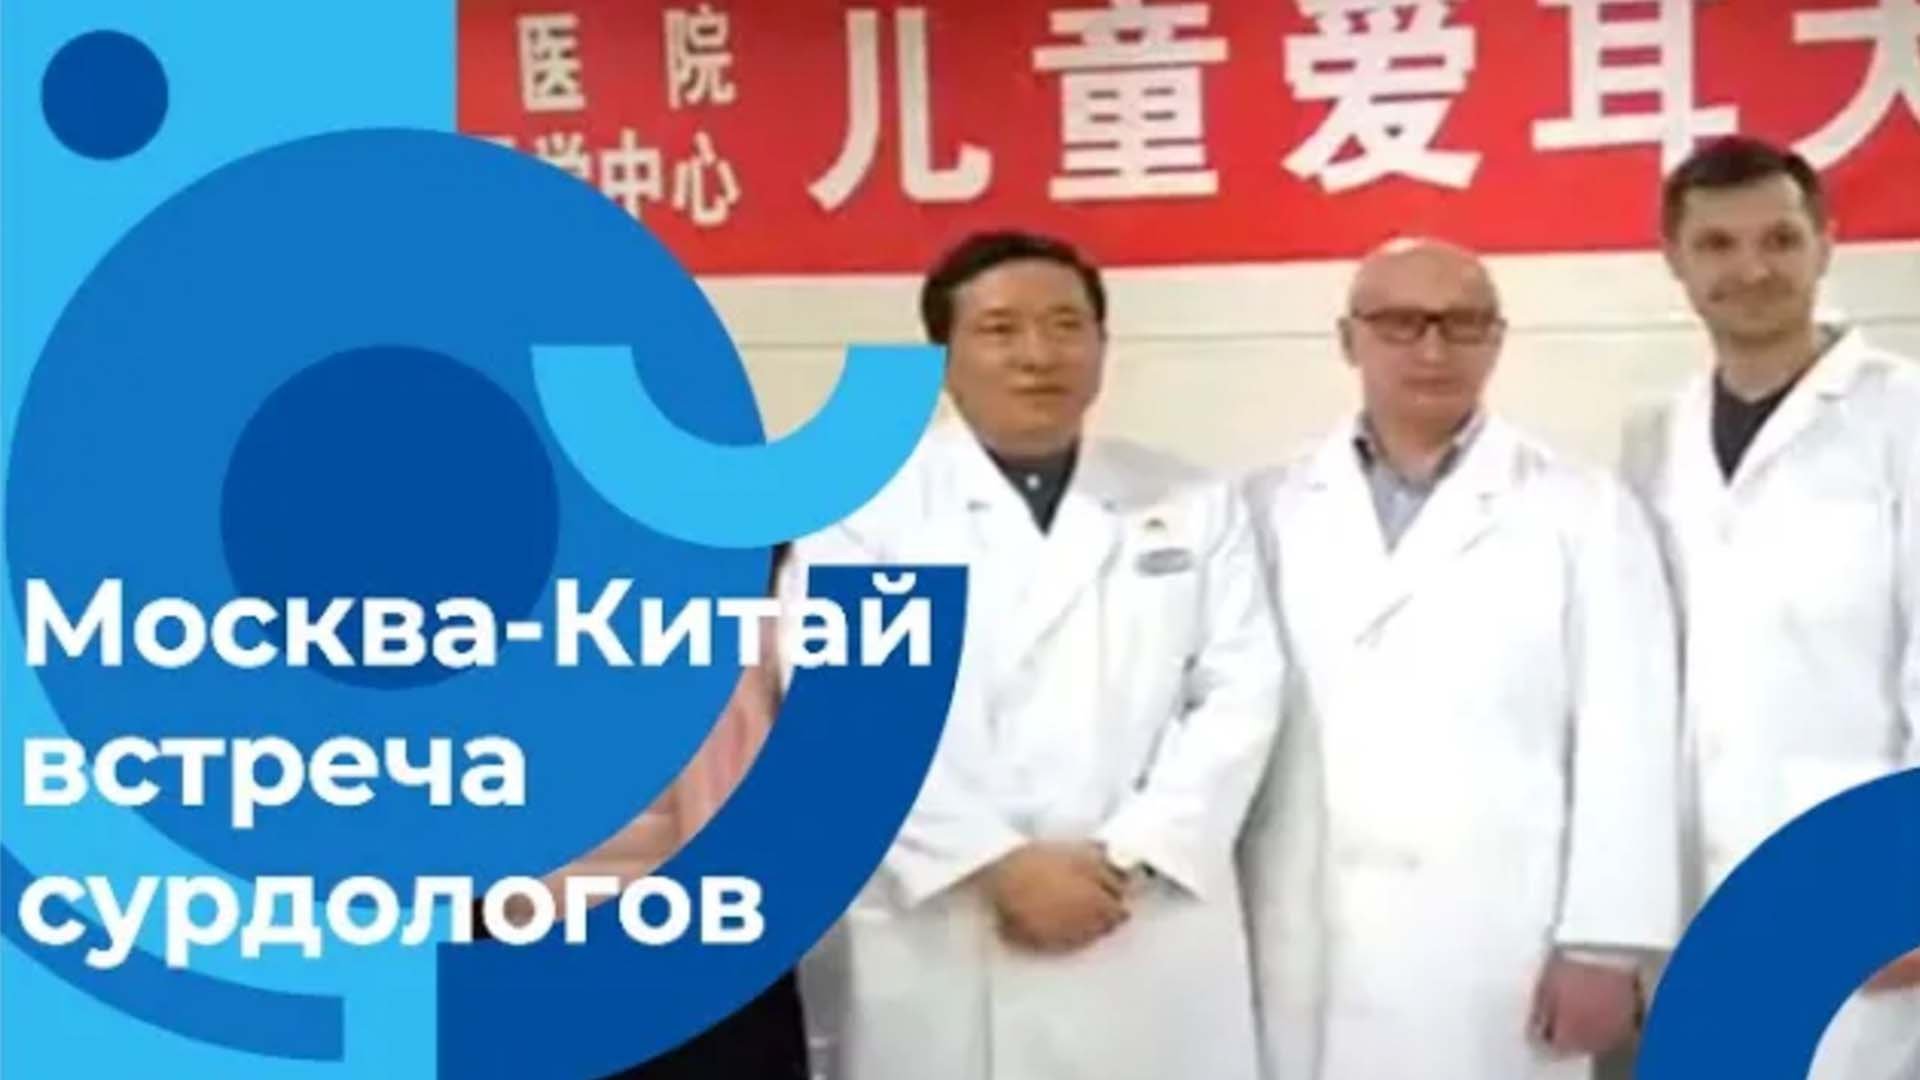 Работают врачи сурдологи Москвы и Китая так лечат нарушения слуха в разных странах